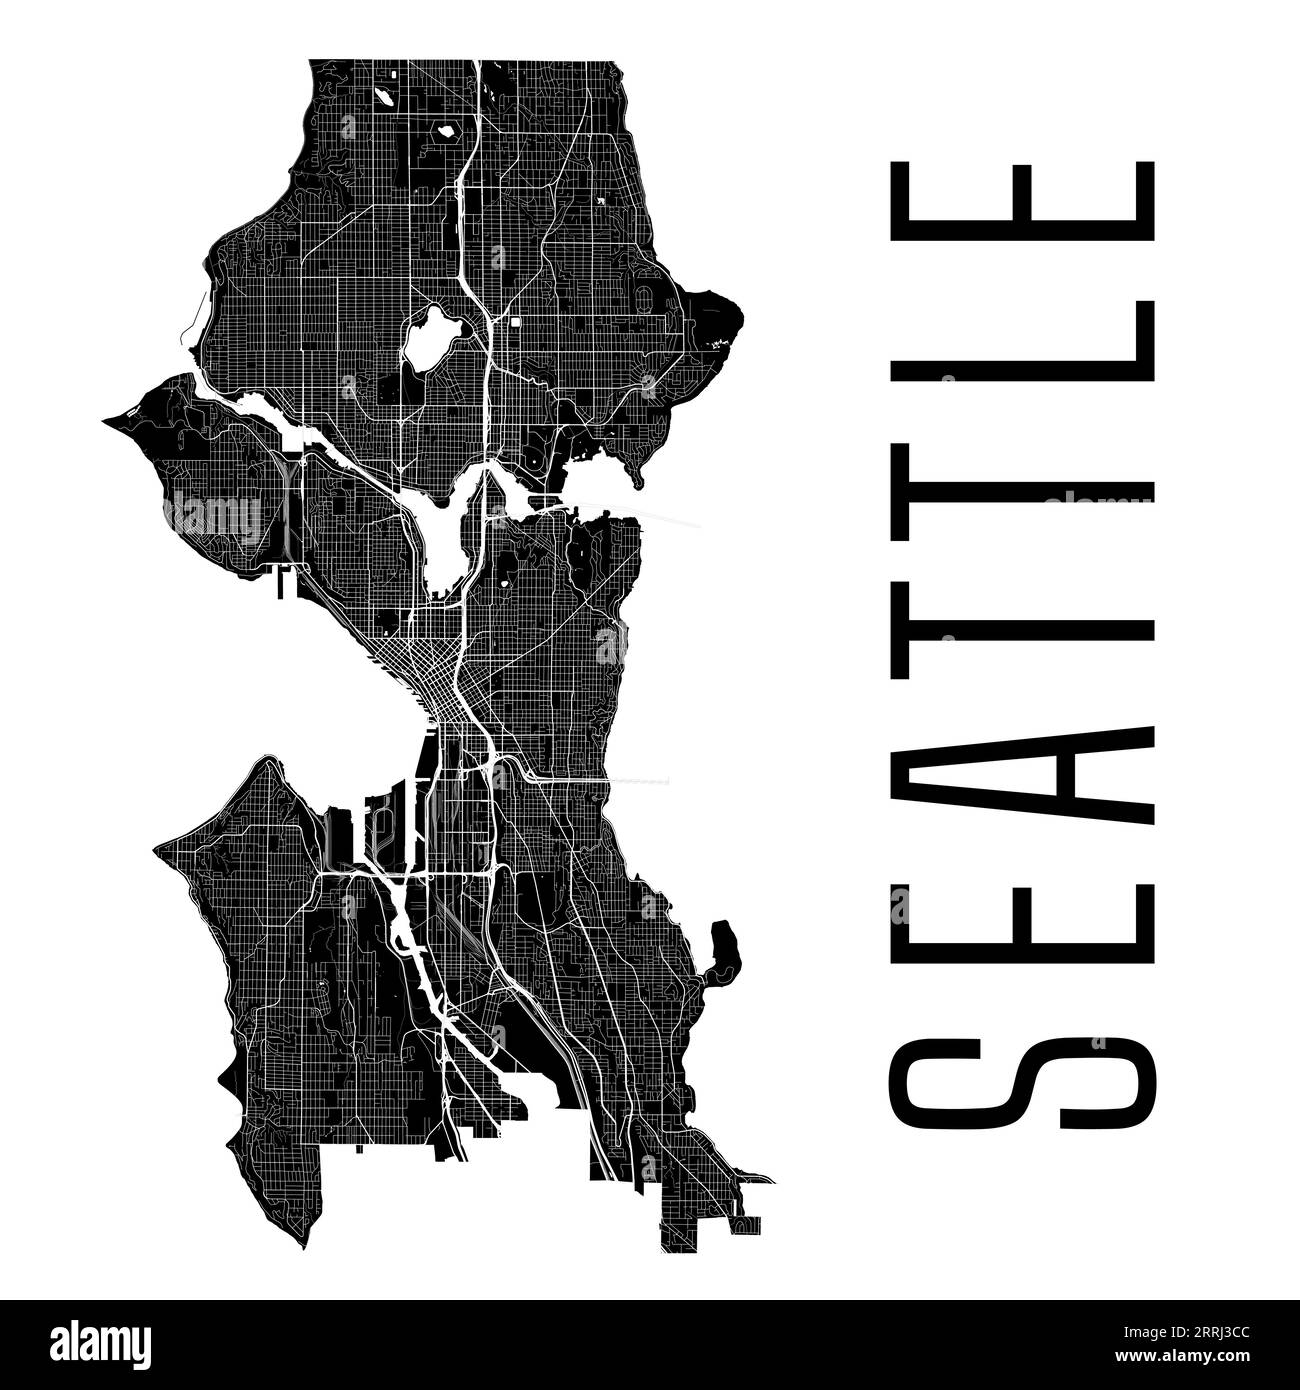 Stadtplan von Seattle, USA. Kommunale Verwaltungsgrenzen, schwarz-weiße Landkarte mit Flüssen und Straßen, Parks und Eisenbahnen. Vektorillustra Stock Vektor